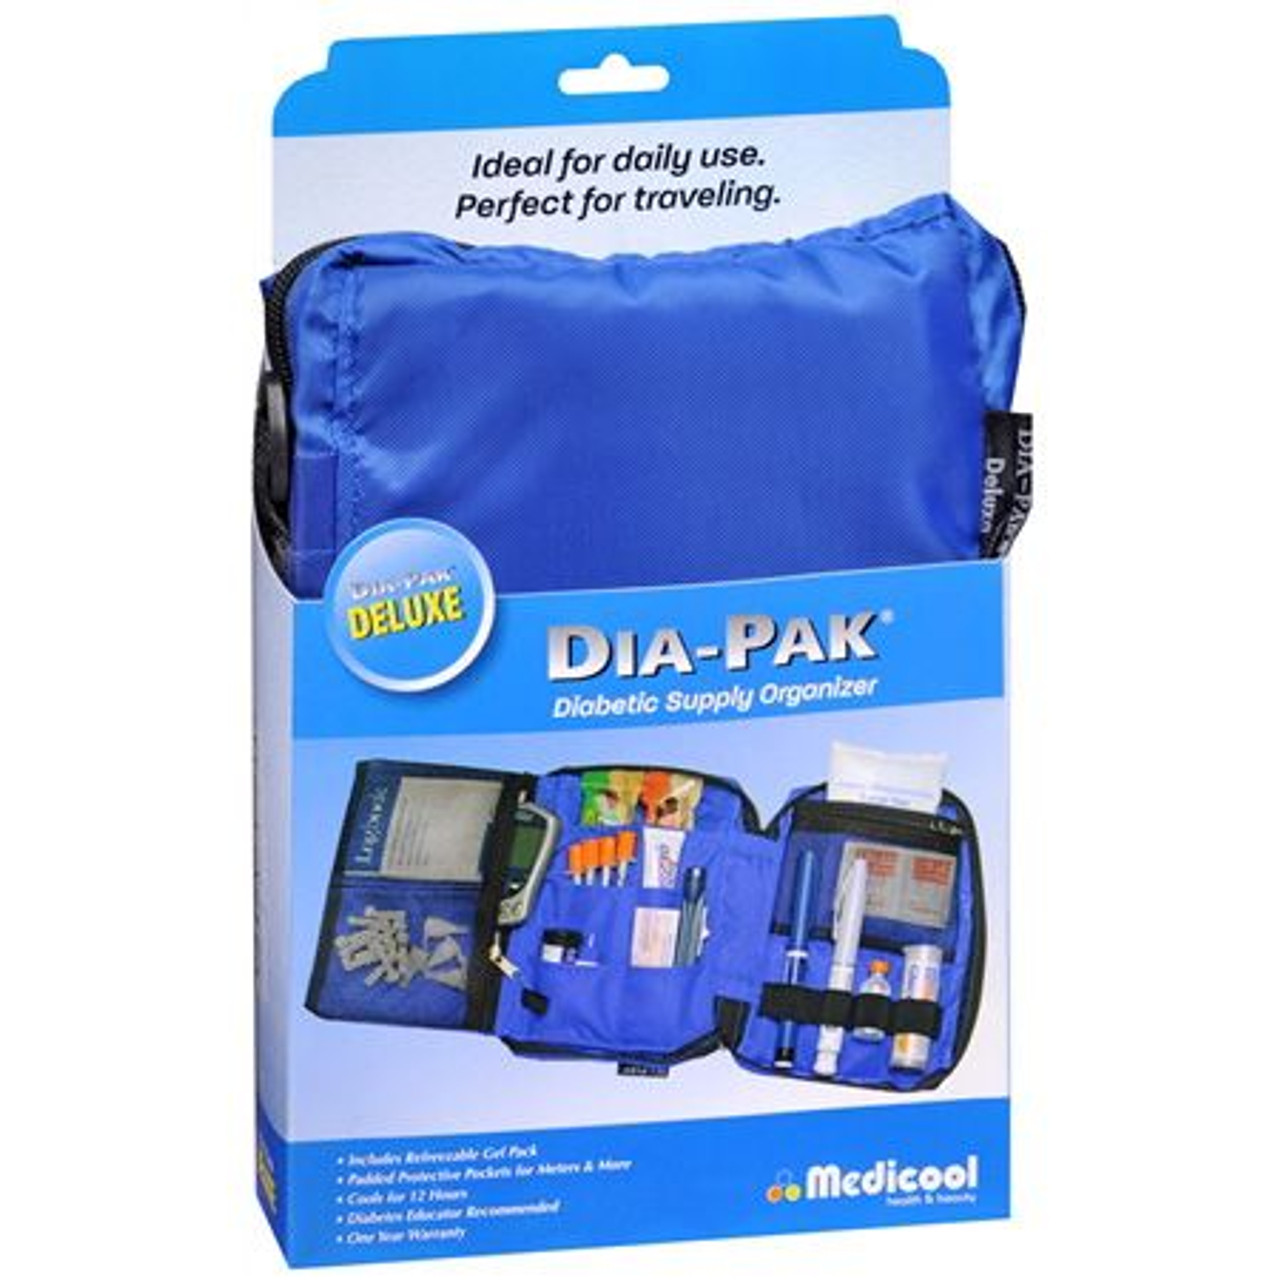 Dia-Pak Classic Diabetic Supply Organizer - Black